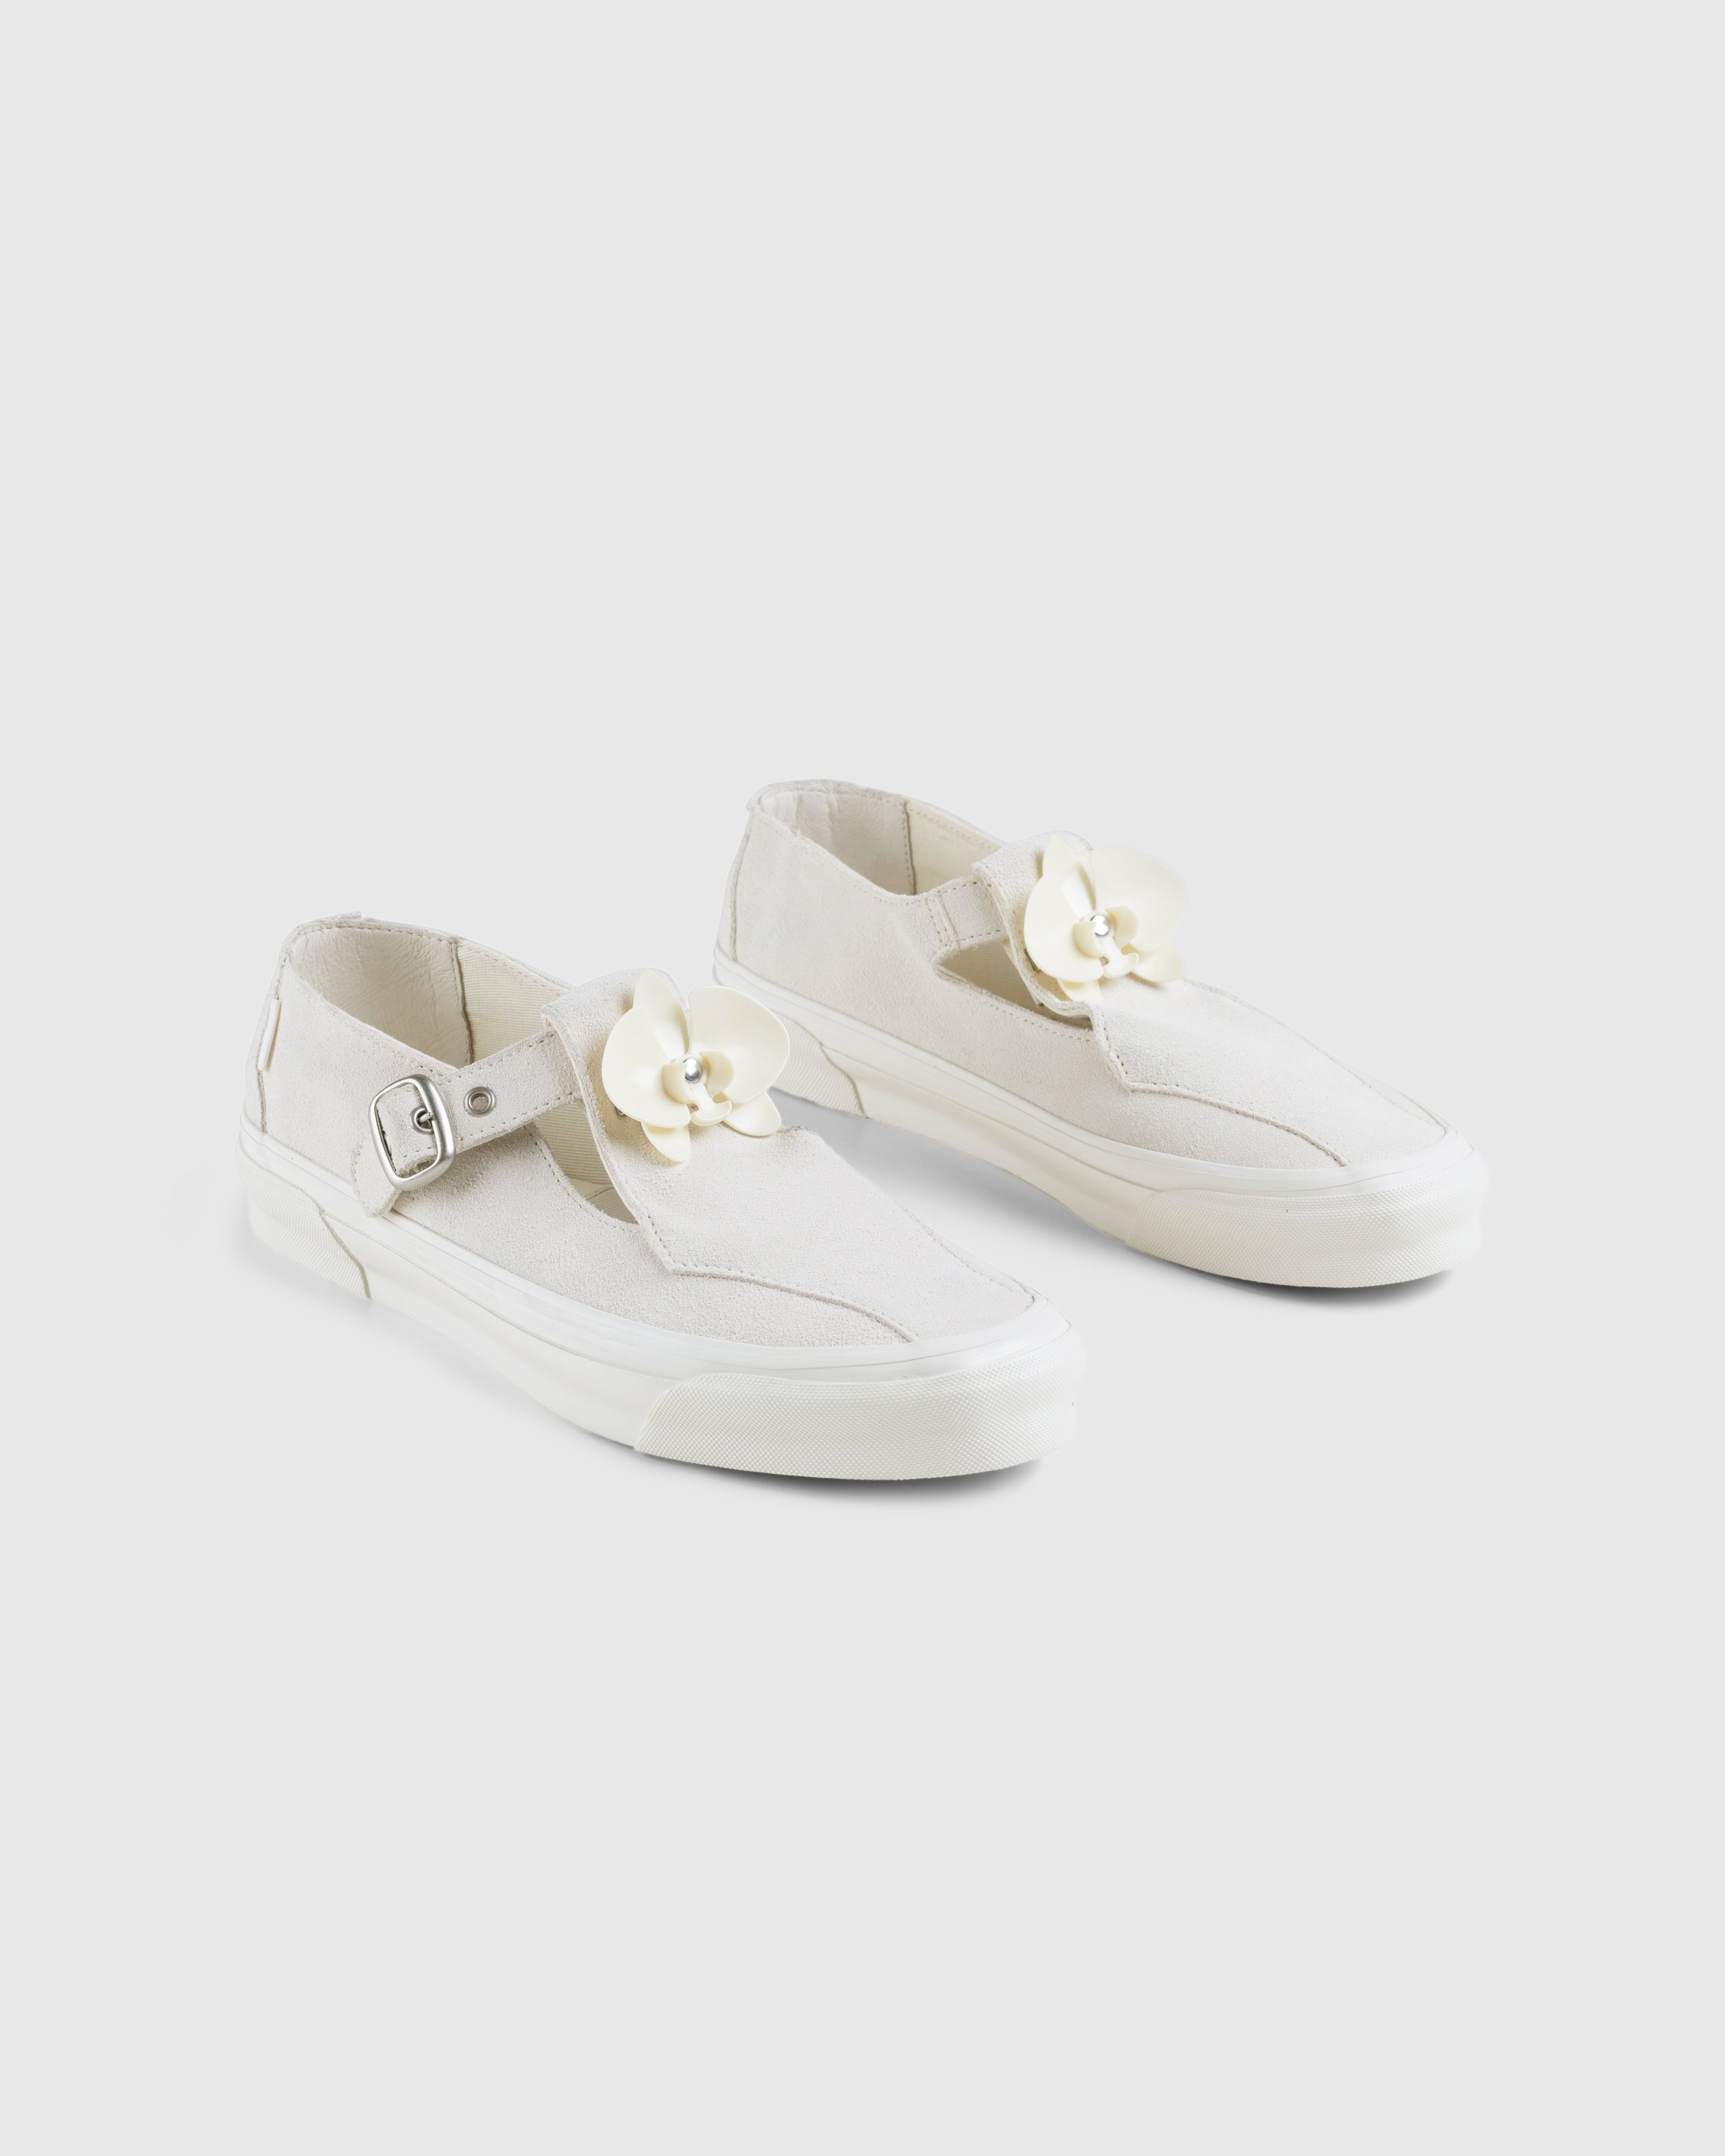 Vans - OG Style 93 LX Marshmallow - Footwear - White - Image 3